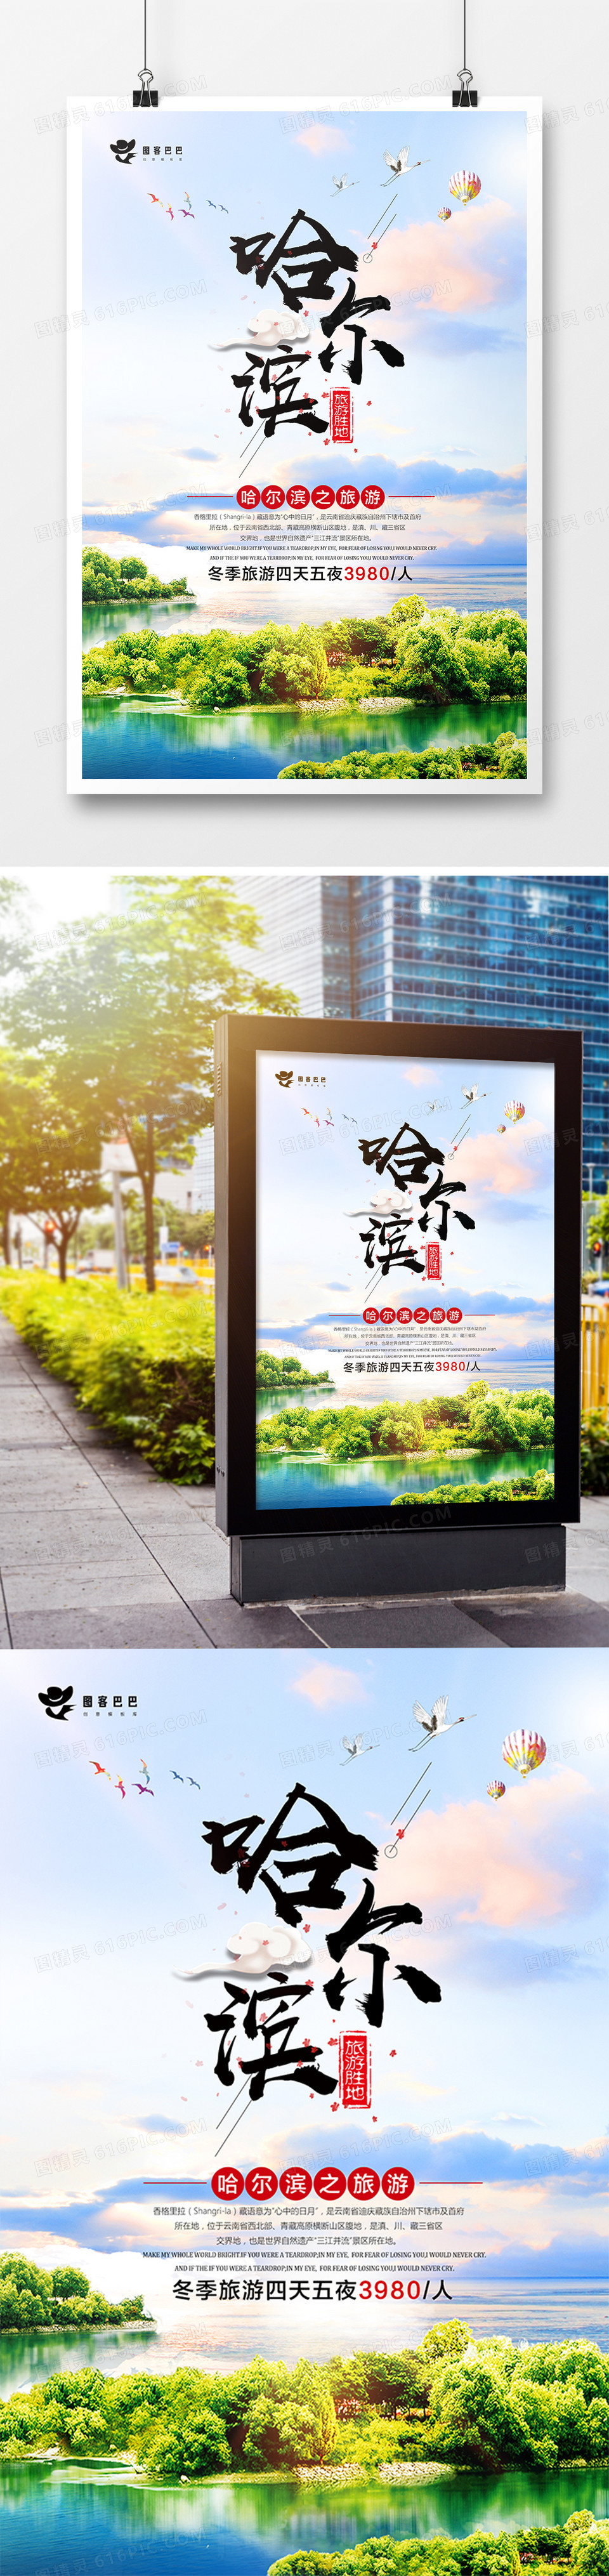 小清新哈尔滨旅游宣传海报模板